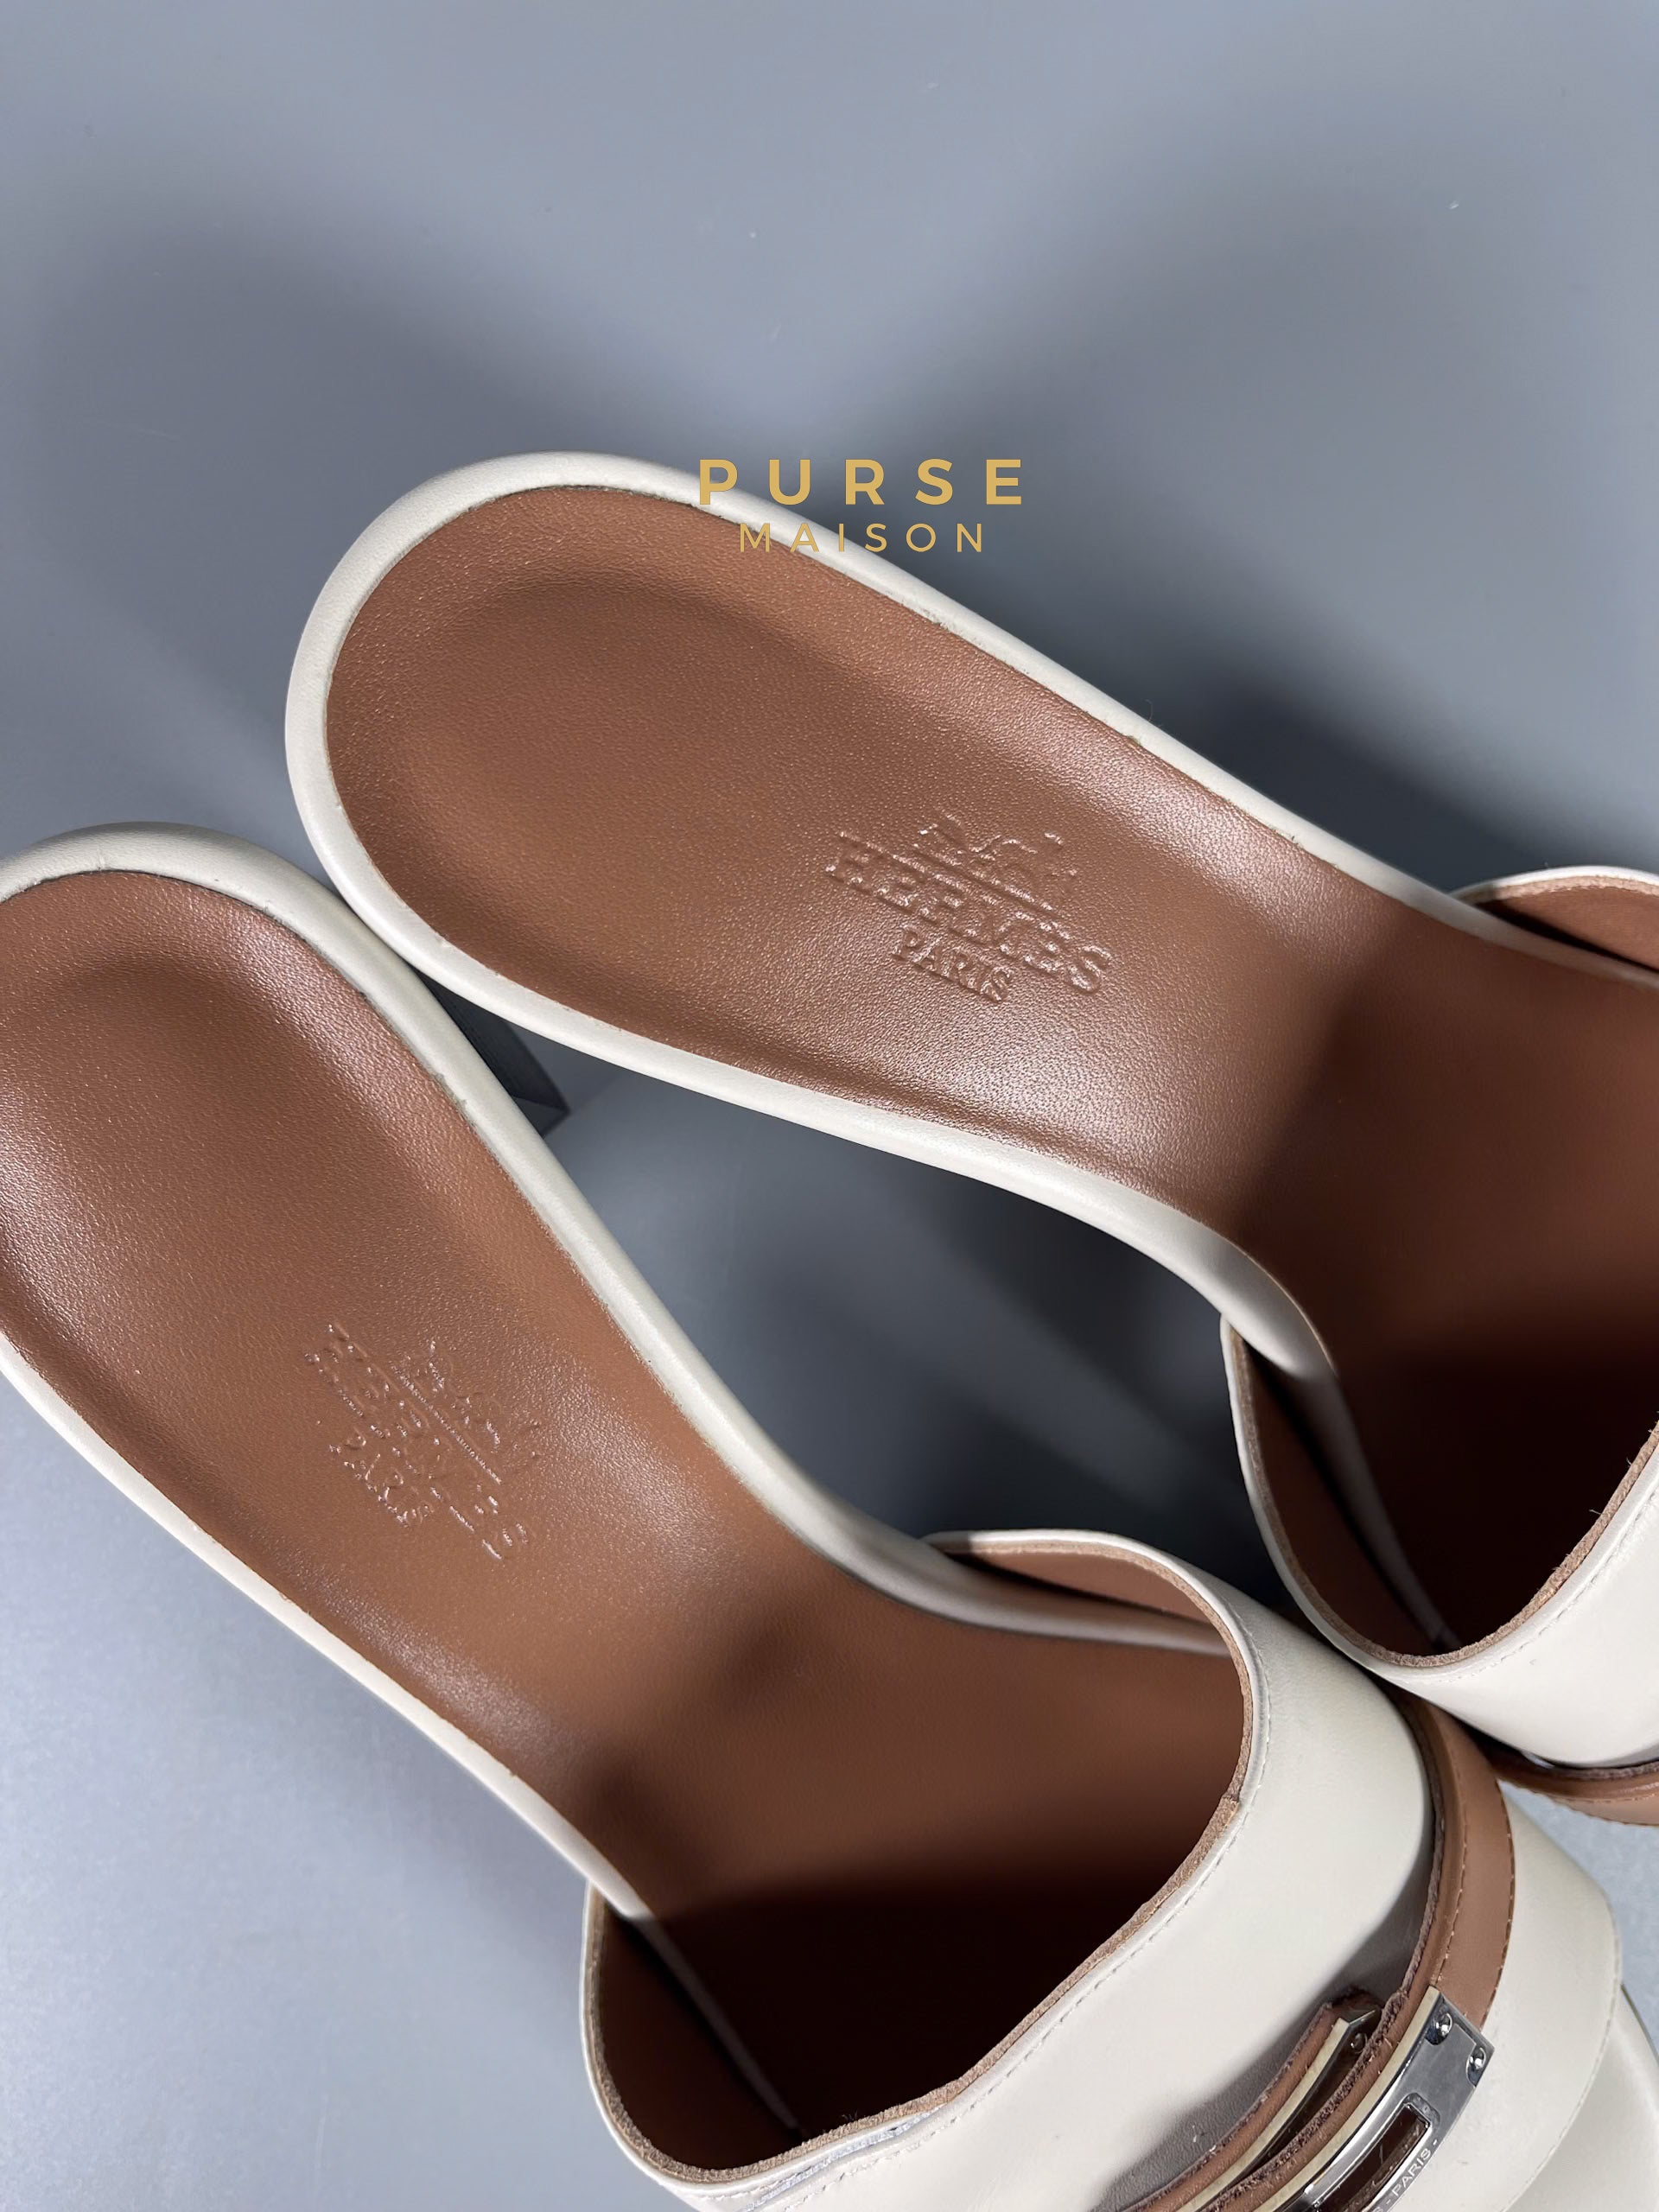 Hermes Gigi 50 Beige Glaise/ Rose Perle Sandals Size 37 EU (24cm) | Purse Maison Luxury Bags Shop